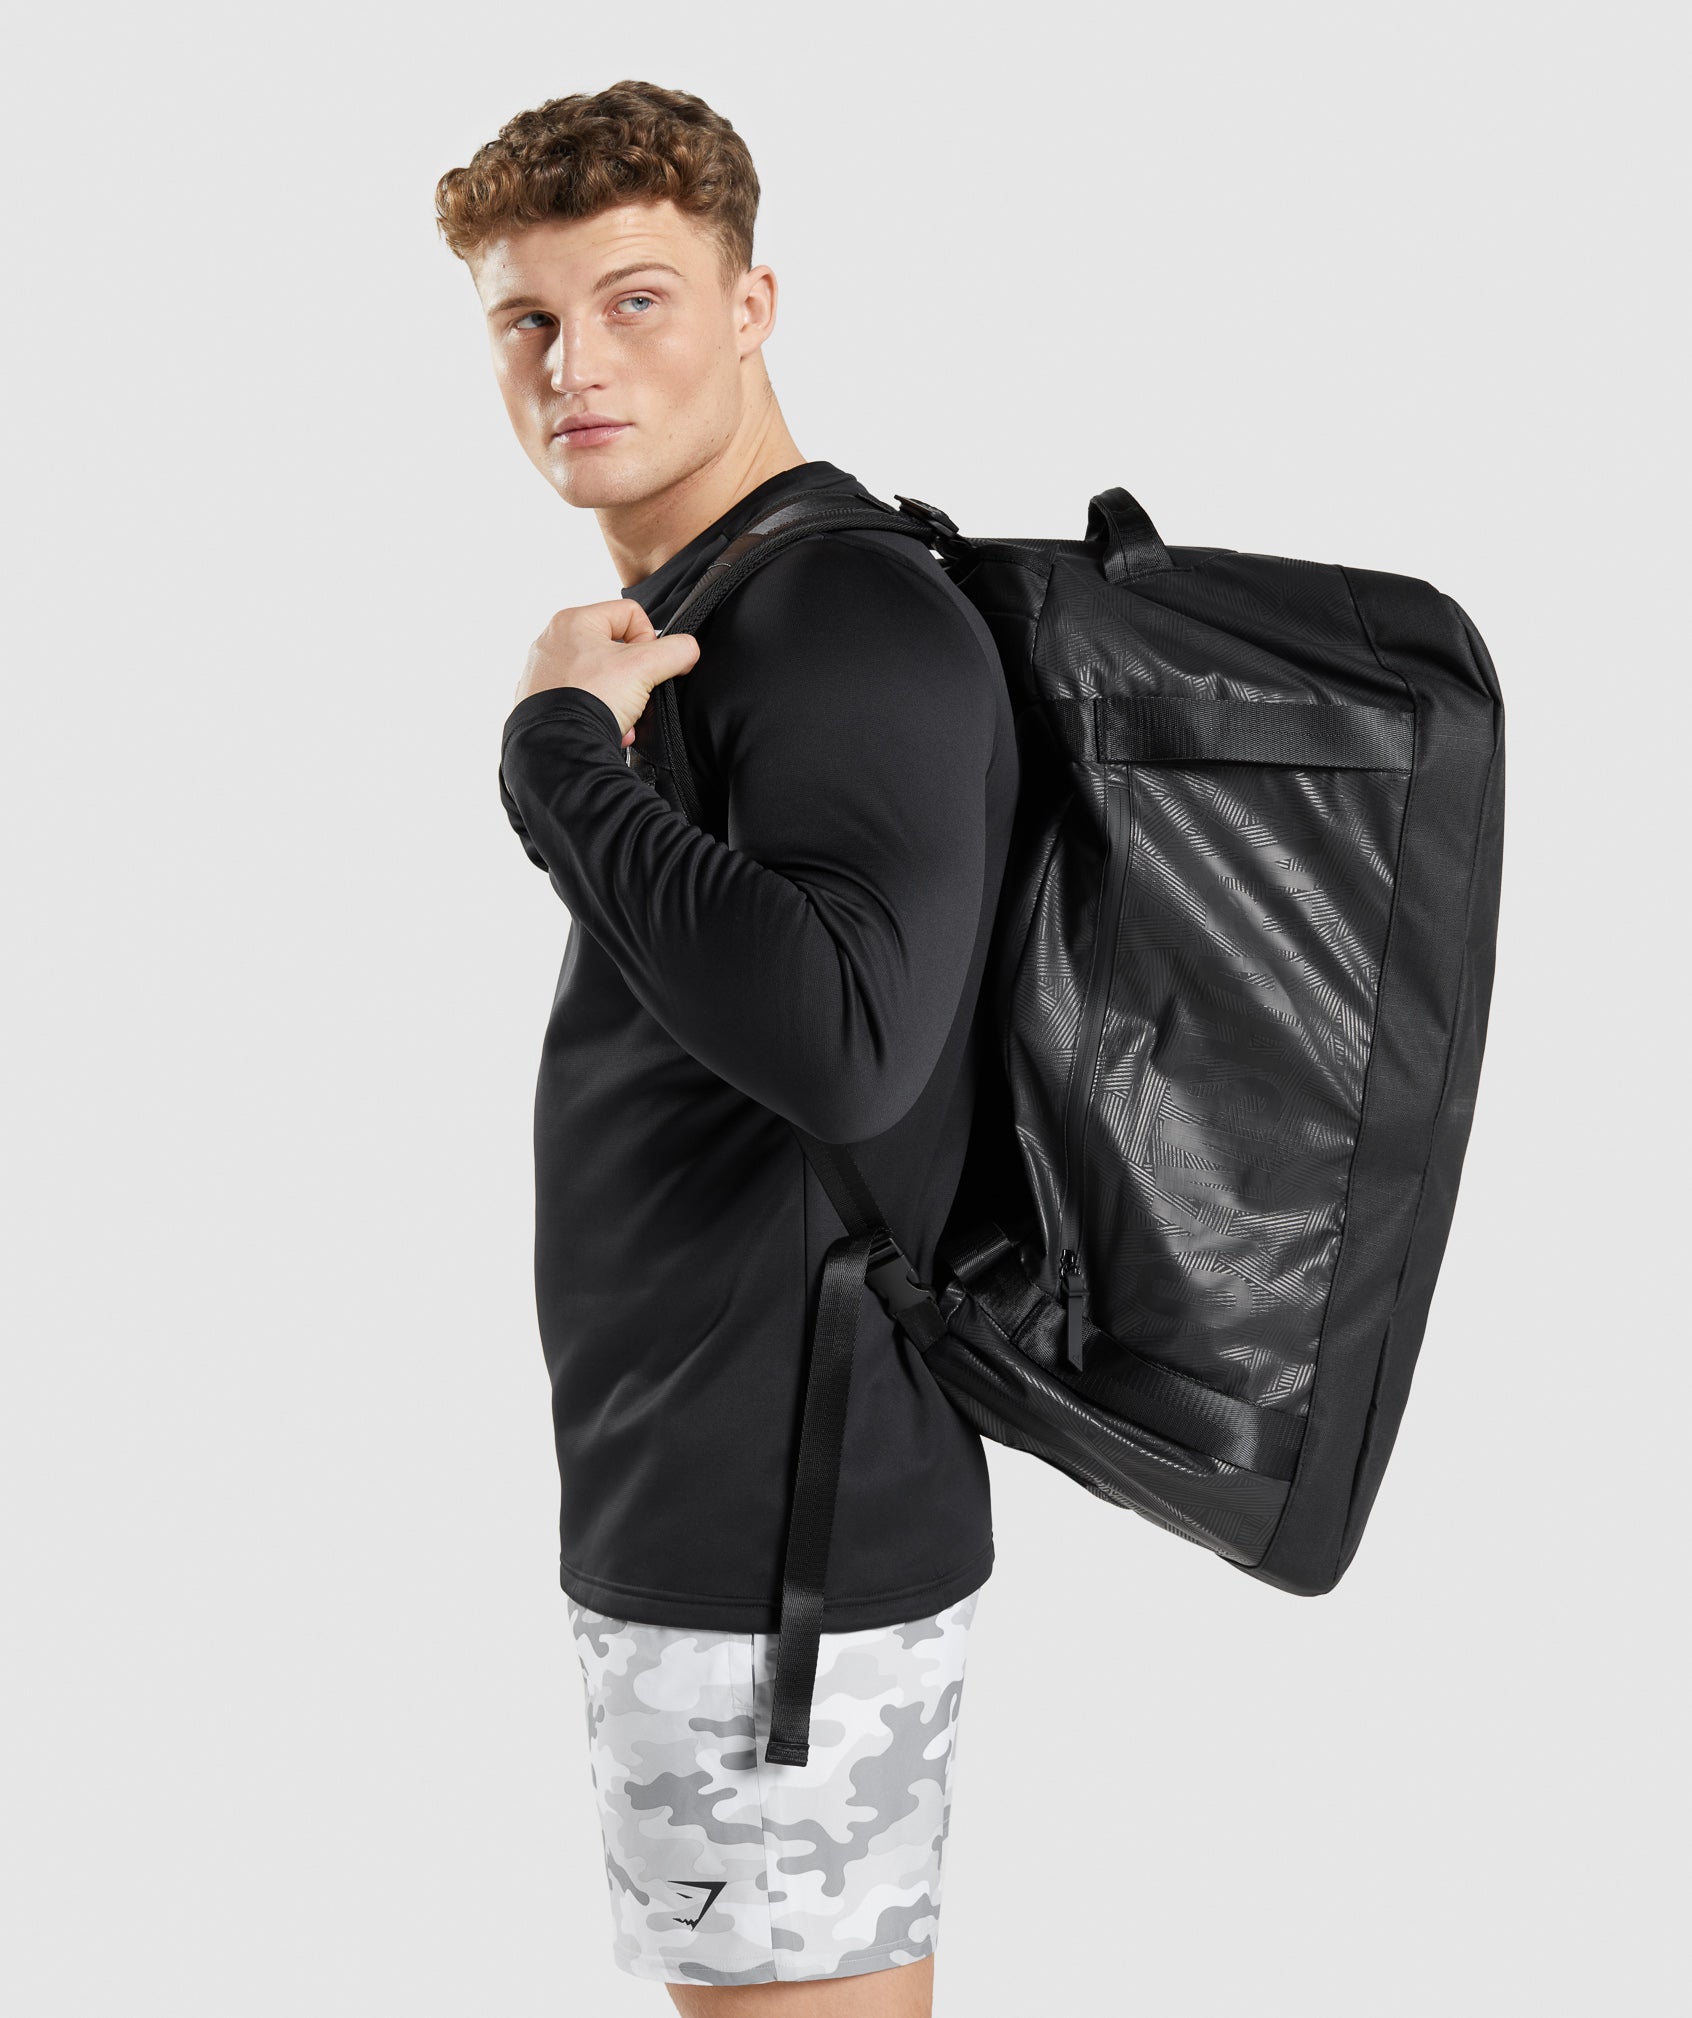 X-Series Duffle Bag in Black Print - view 1